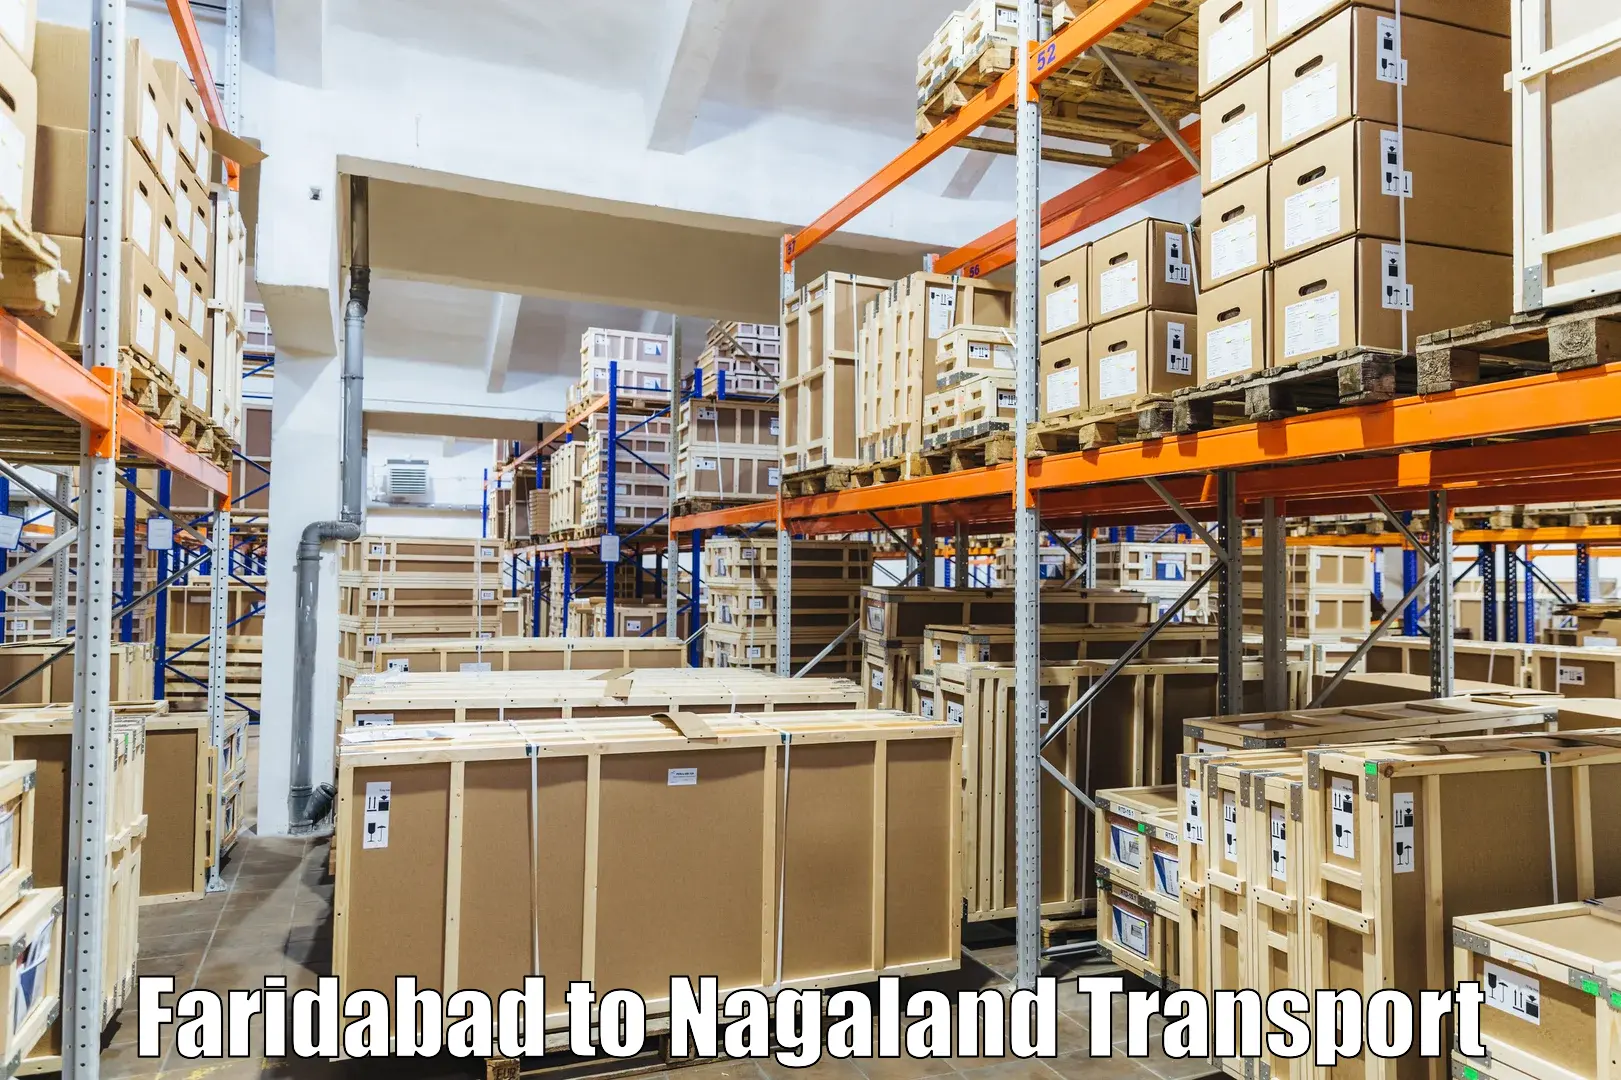 Express transport services Faridabad to Nagaland